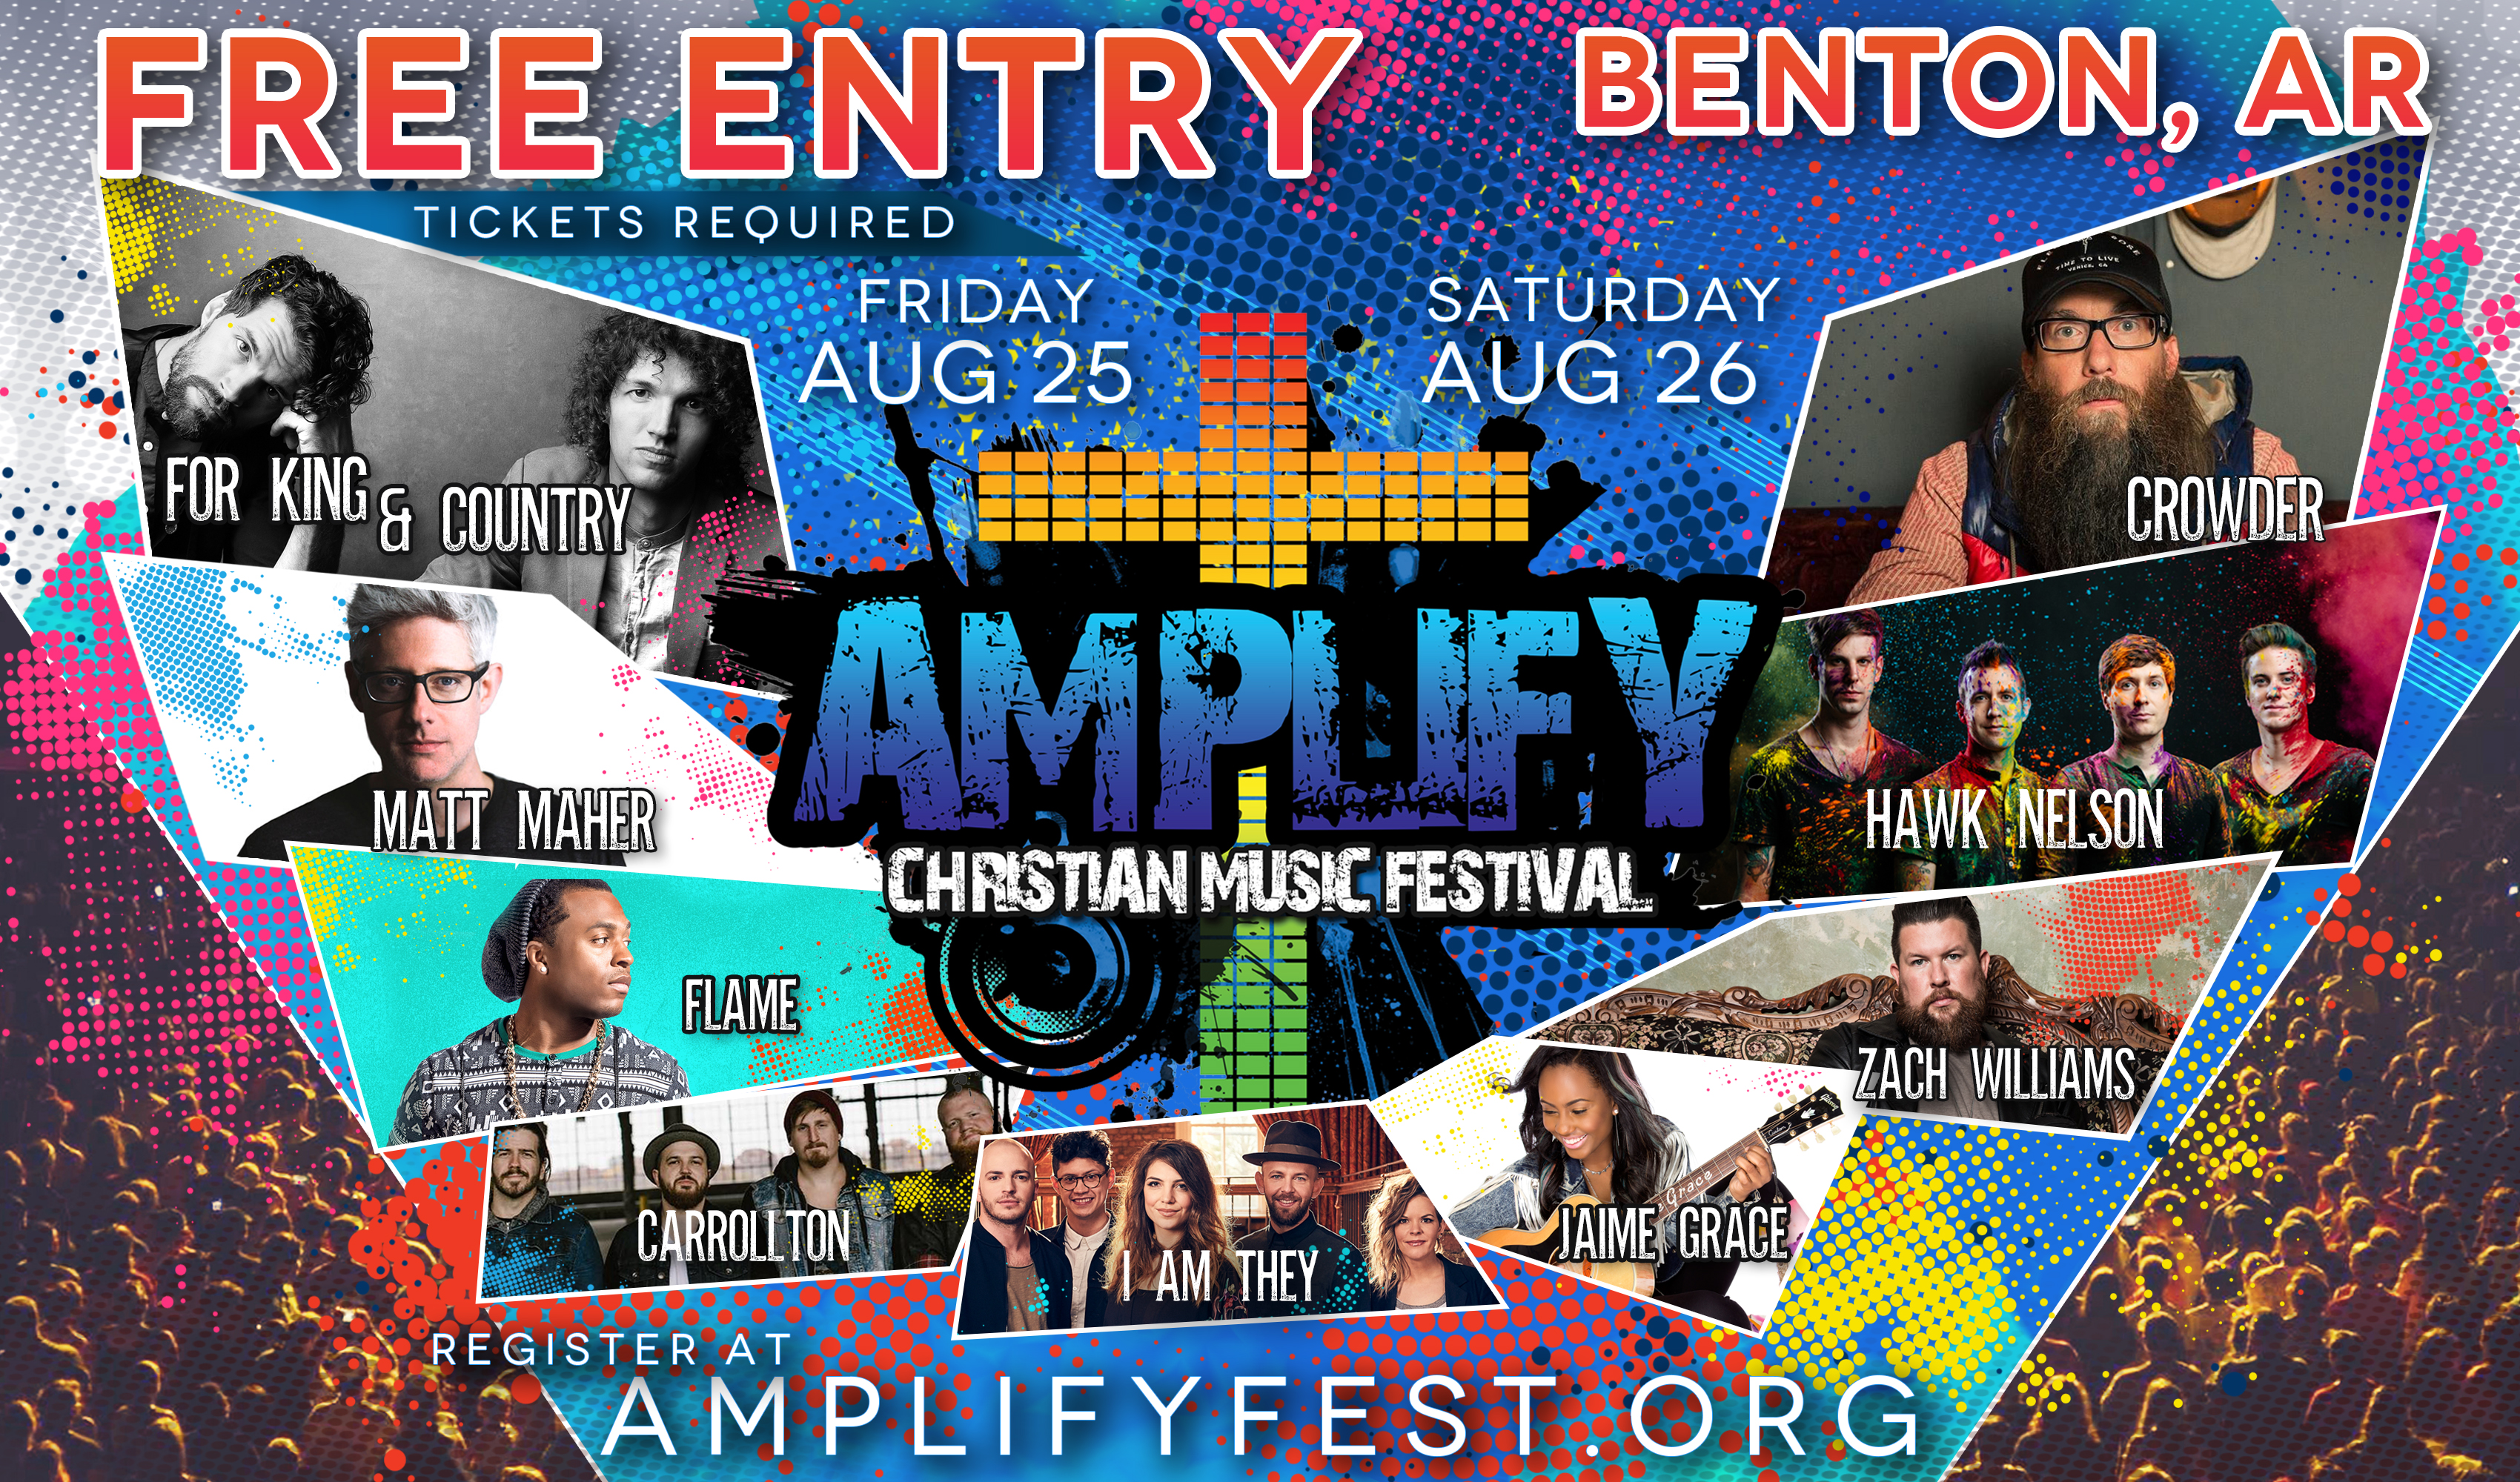 Amplify Fest 2017 Only In Arkansas